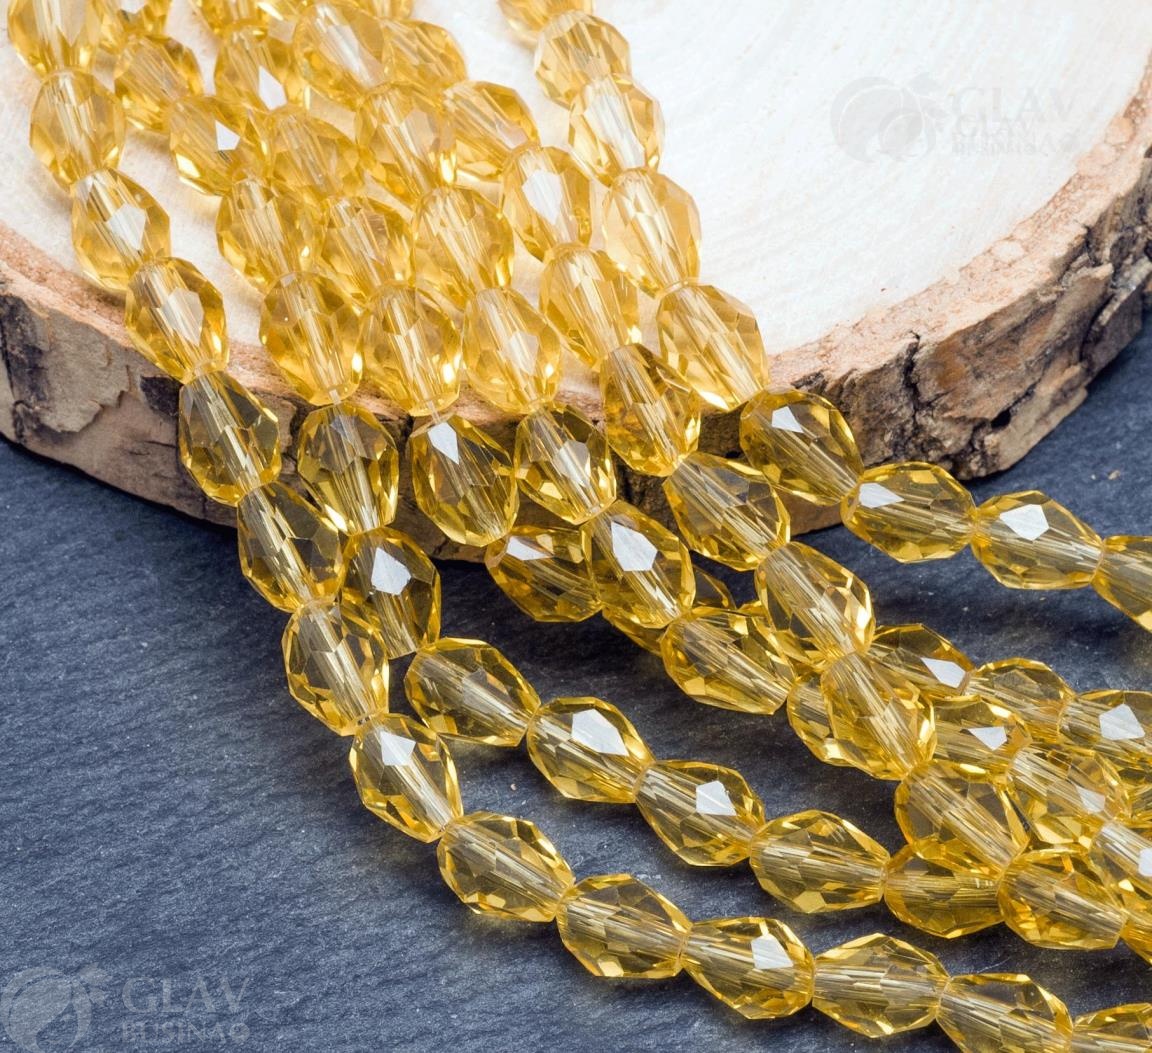 Нитка золотистых граненых хрустальных бусин-капель размером 6х8 мм. Длина нитки составляет 52 см и содержит около 65 штук бусин.